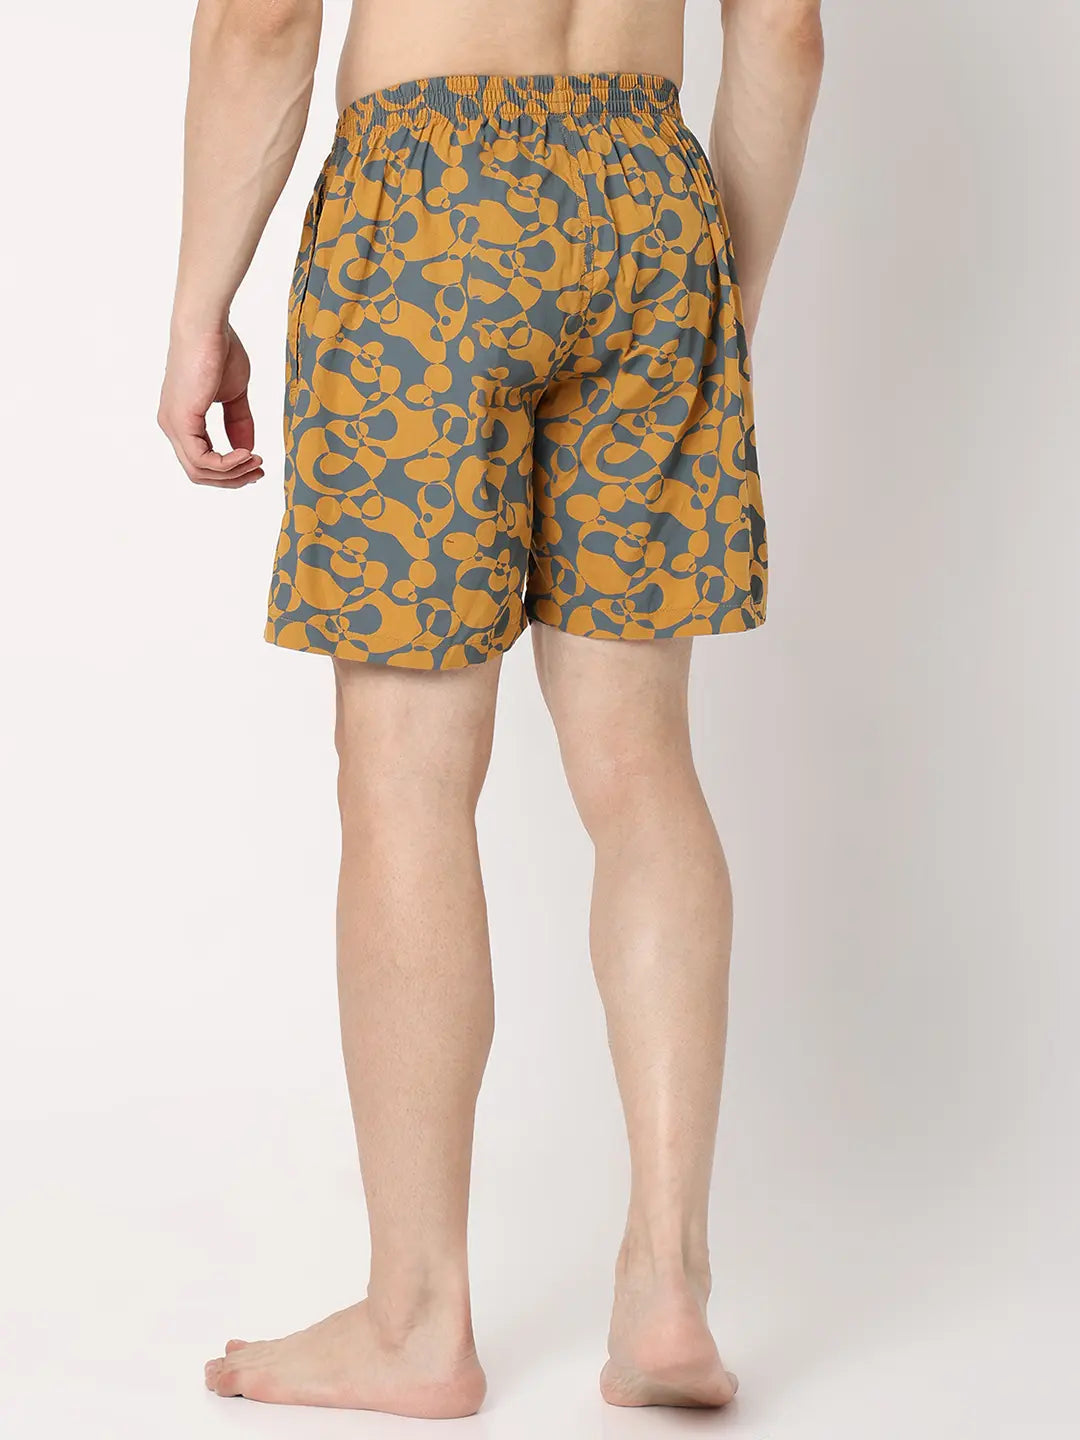 Underjeans by Spykar Men Premium Yellow Cotton Blend Regular Fit Boxer Shorts